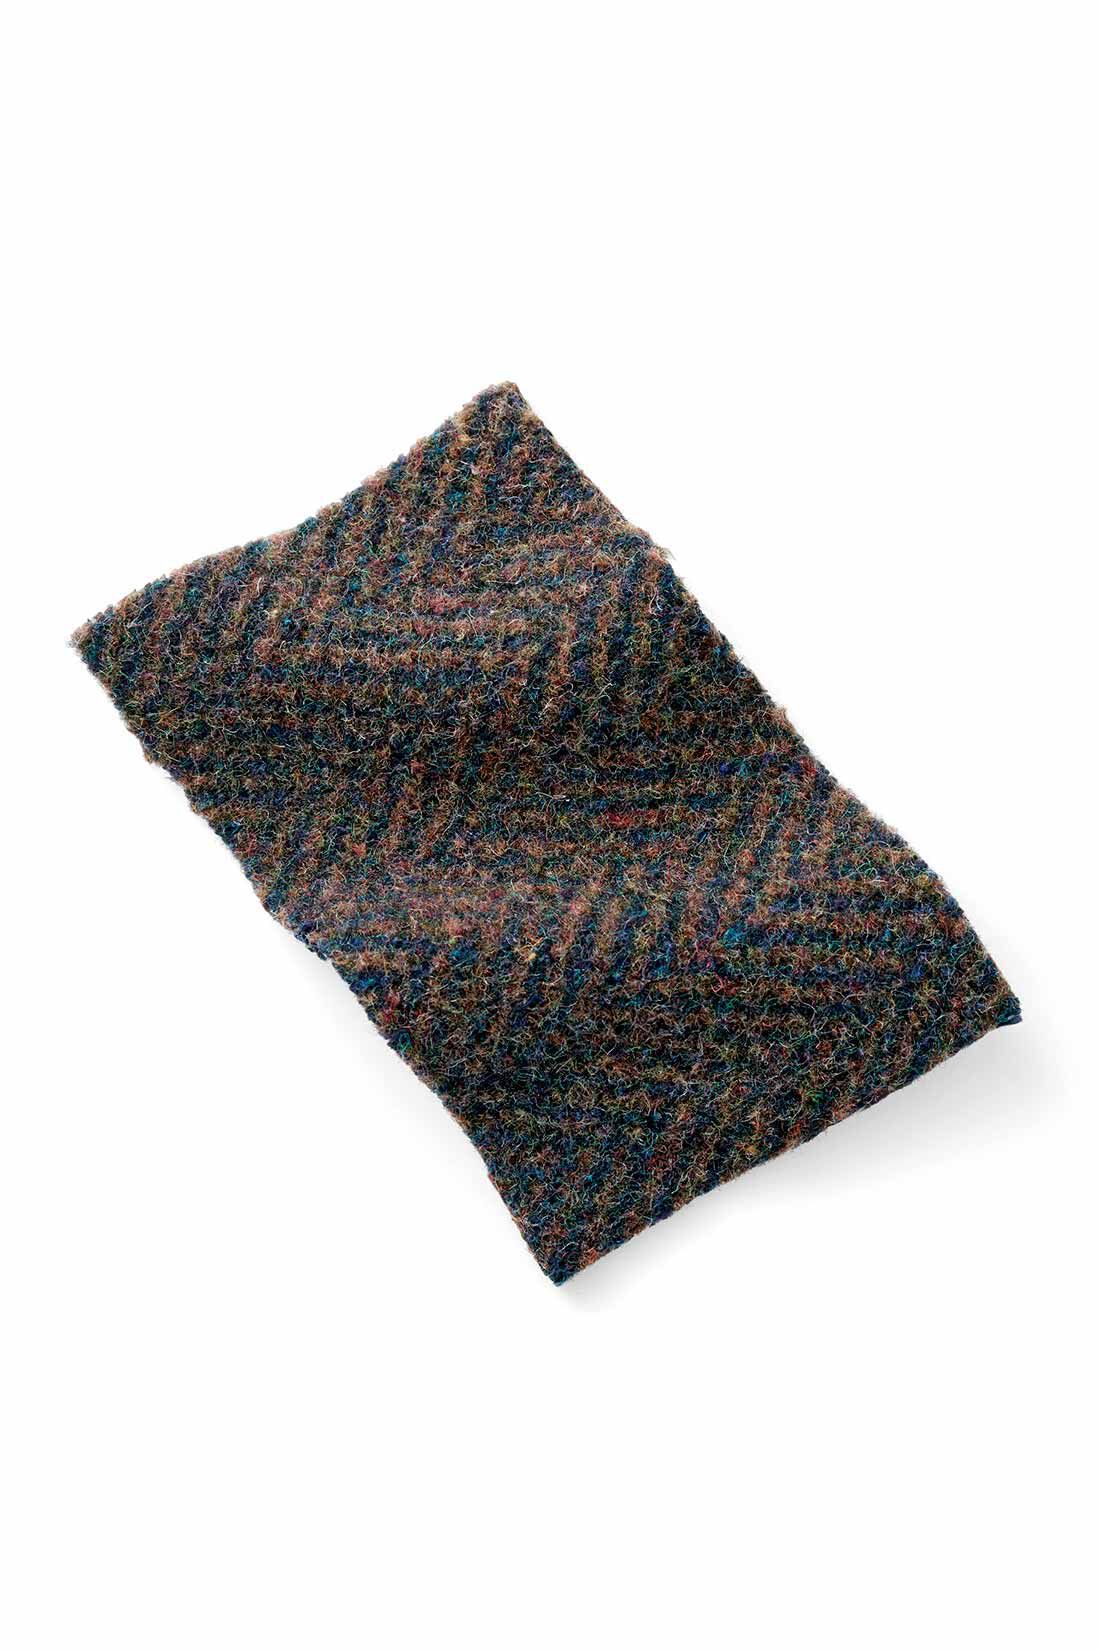 MEDE19F|MEDE19F　毛混のミックスツイードヘリンボーンのロングPコート〈ブラウン〉|ウール混のツイードヘリンボーン。さまざまな色が織りなす、深みのある美しさ。